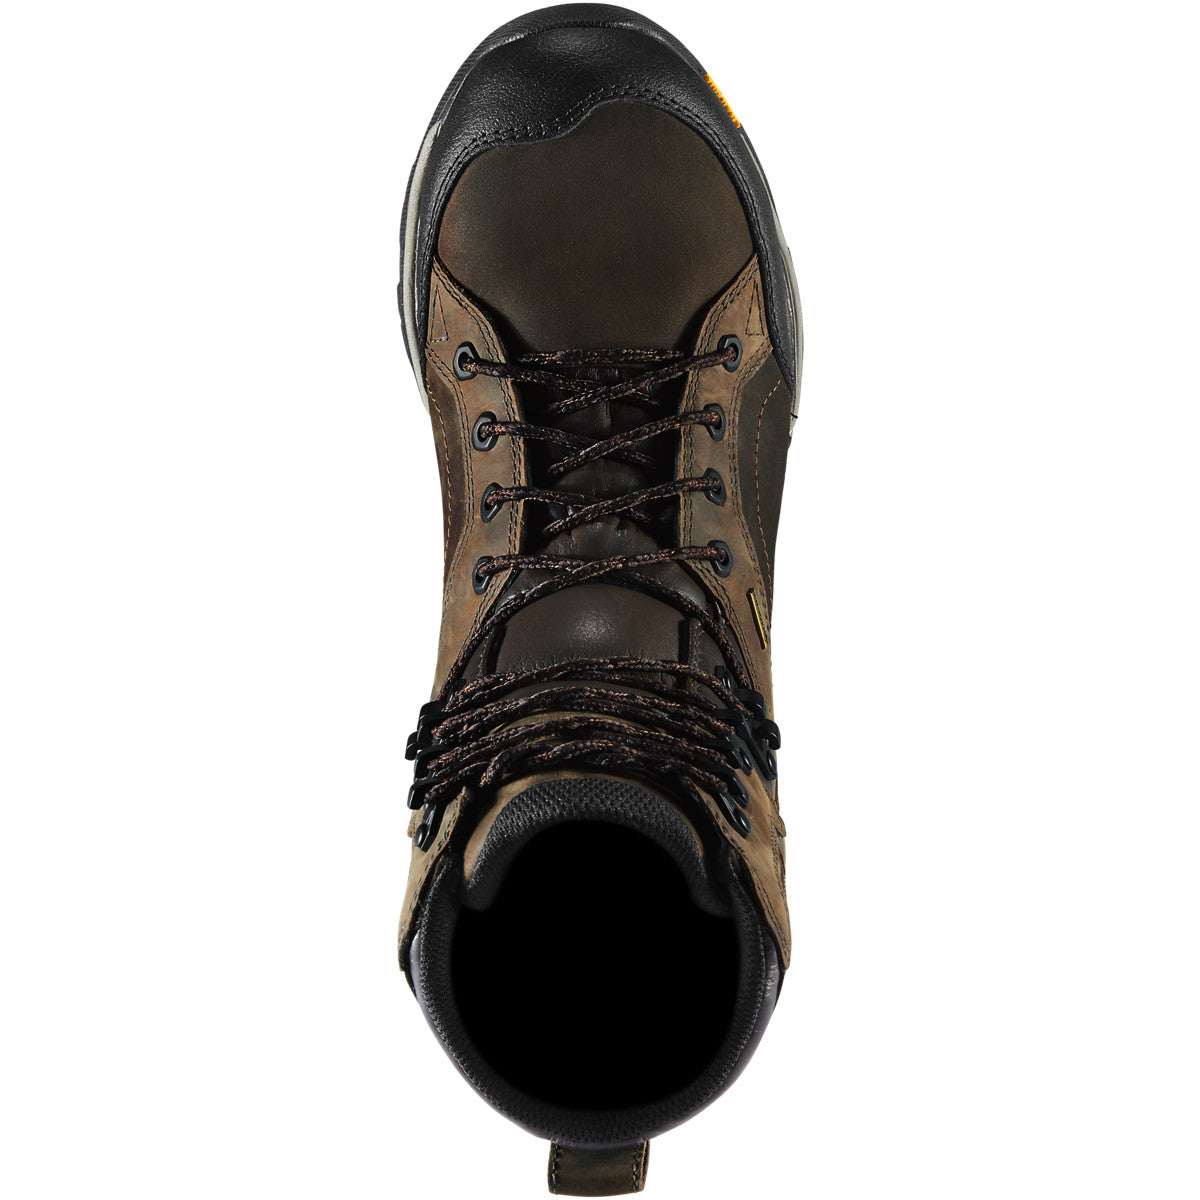 Danner Men's Crucial 8" Plain Toe Waterproof Work Boot- Brown - 15862  - Overlook Boots